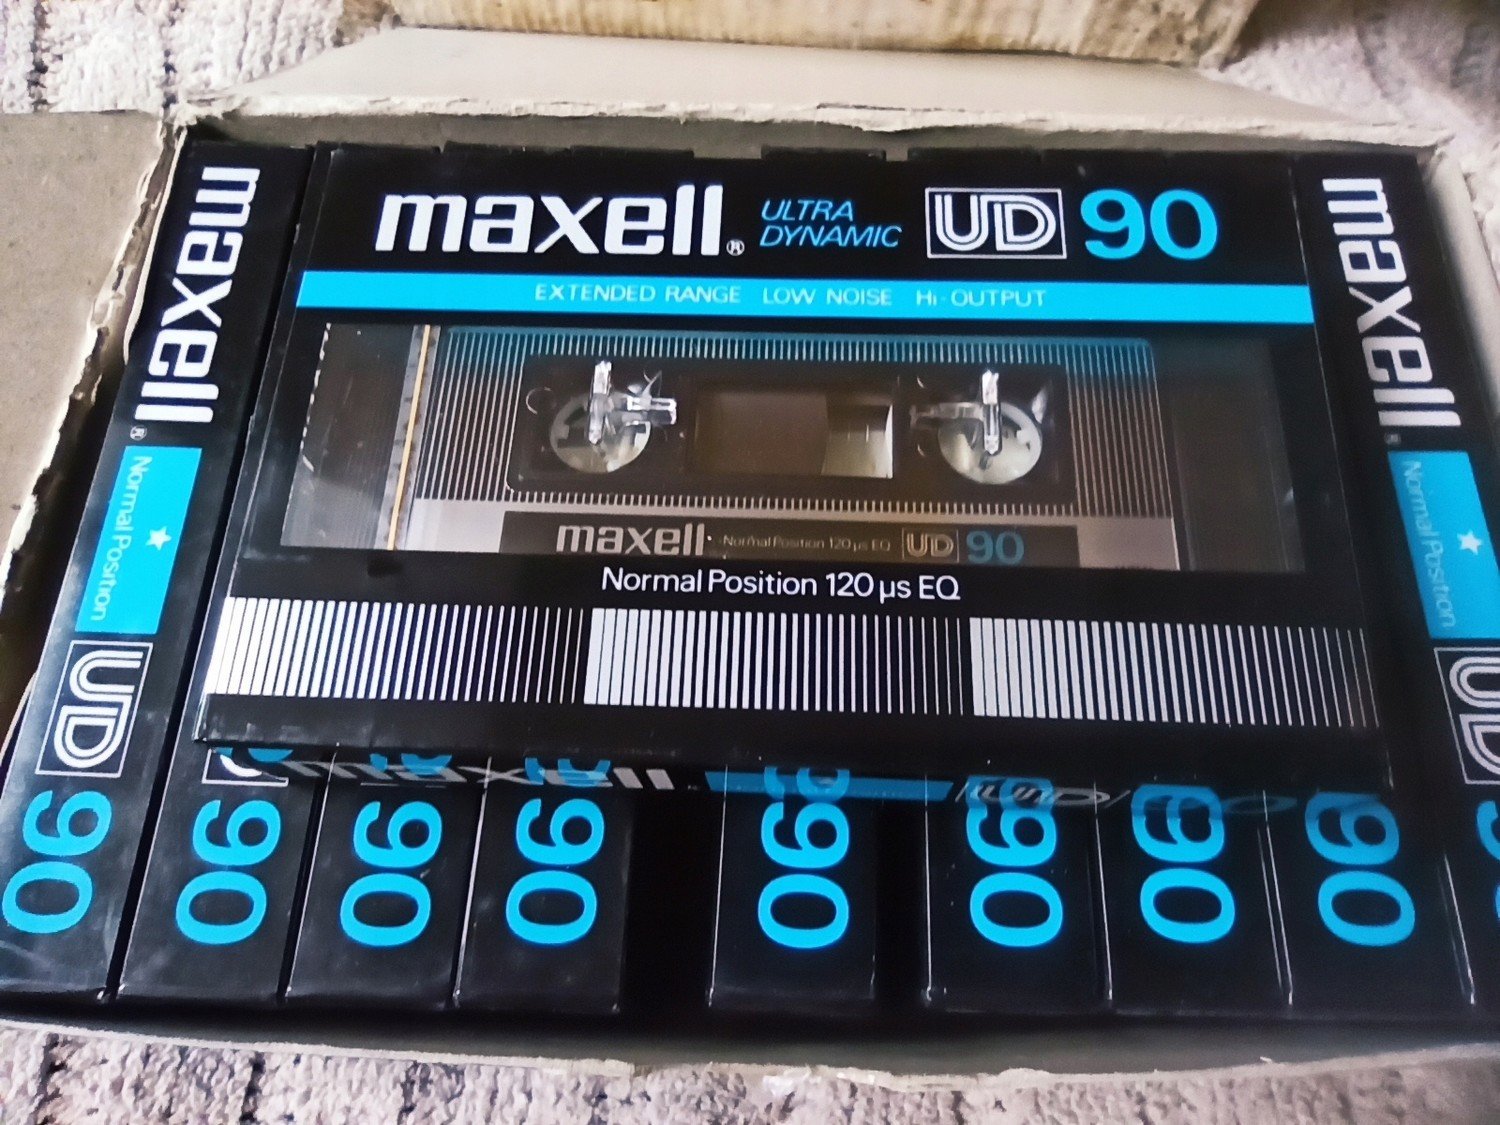 Maxell Ud 90 1982r Nová Japonské vydání-1ks